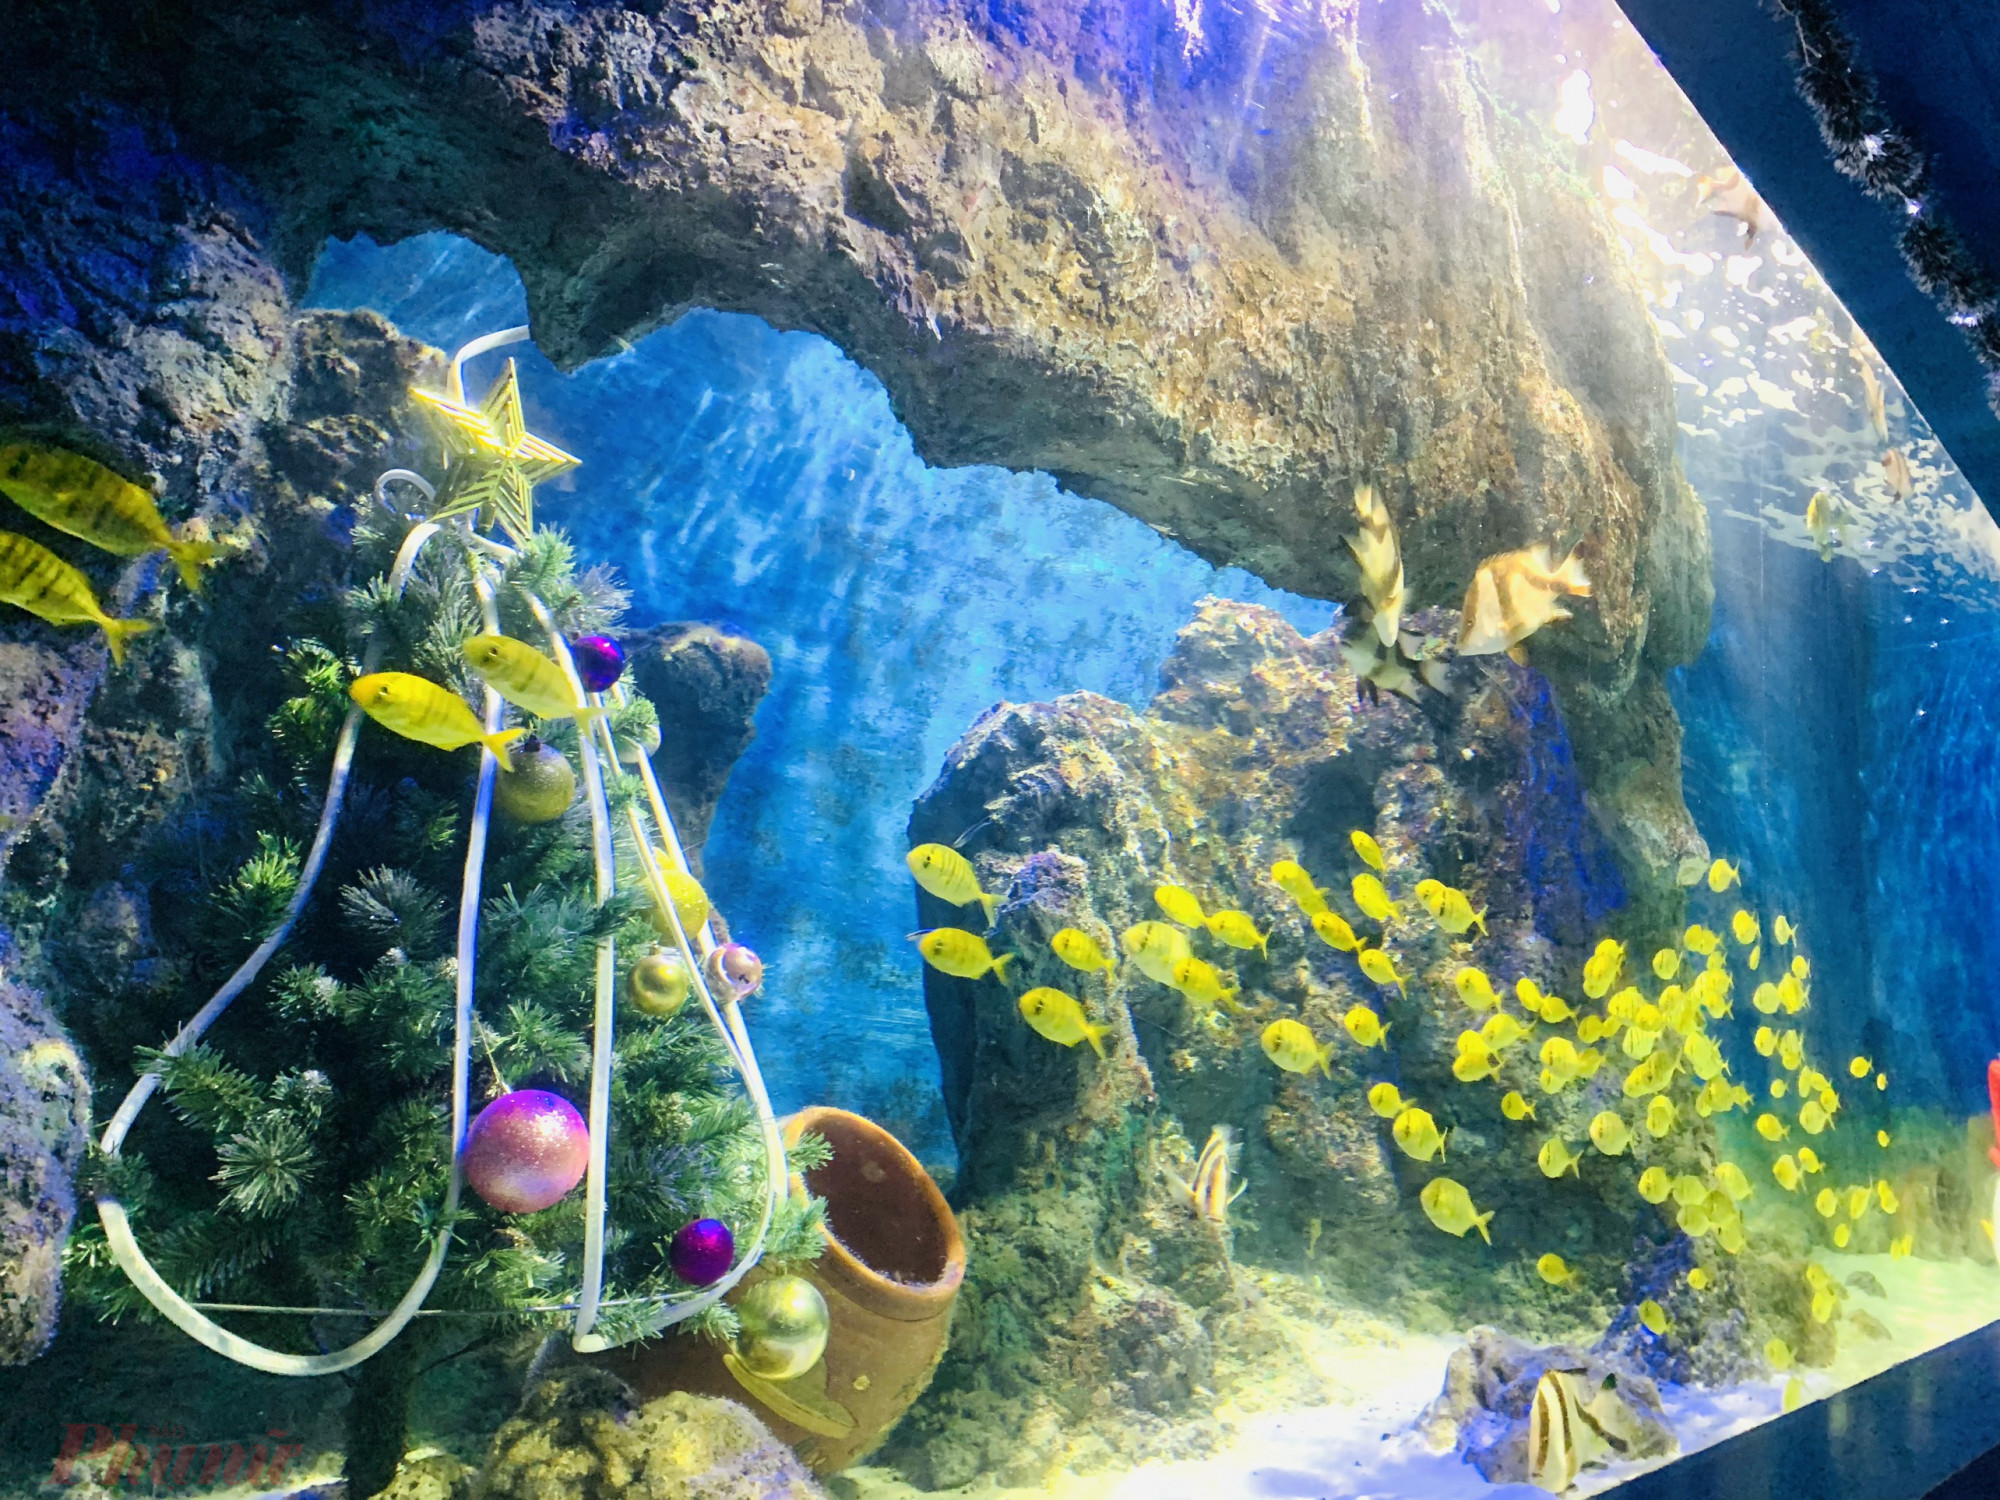 Ngoài biểu diễn phục vụ du khách, tại Bảo tàng Hải dương học còn trang trí cây thông Noel trong bể nước